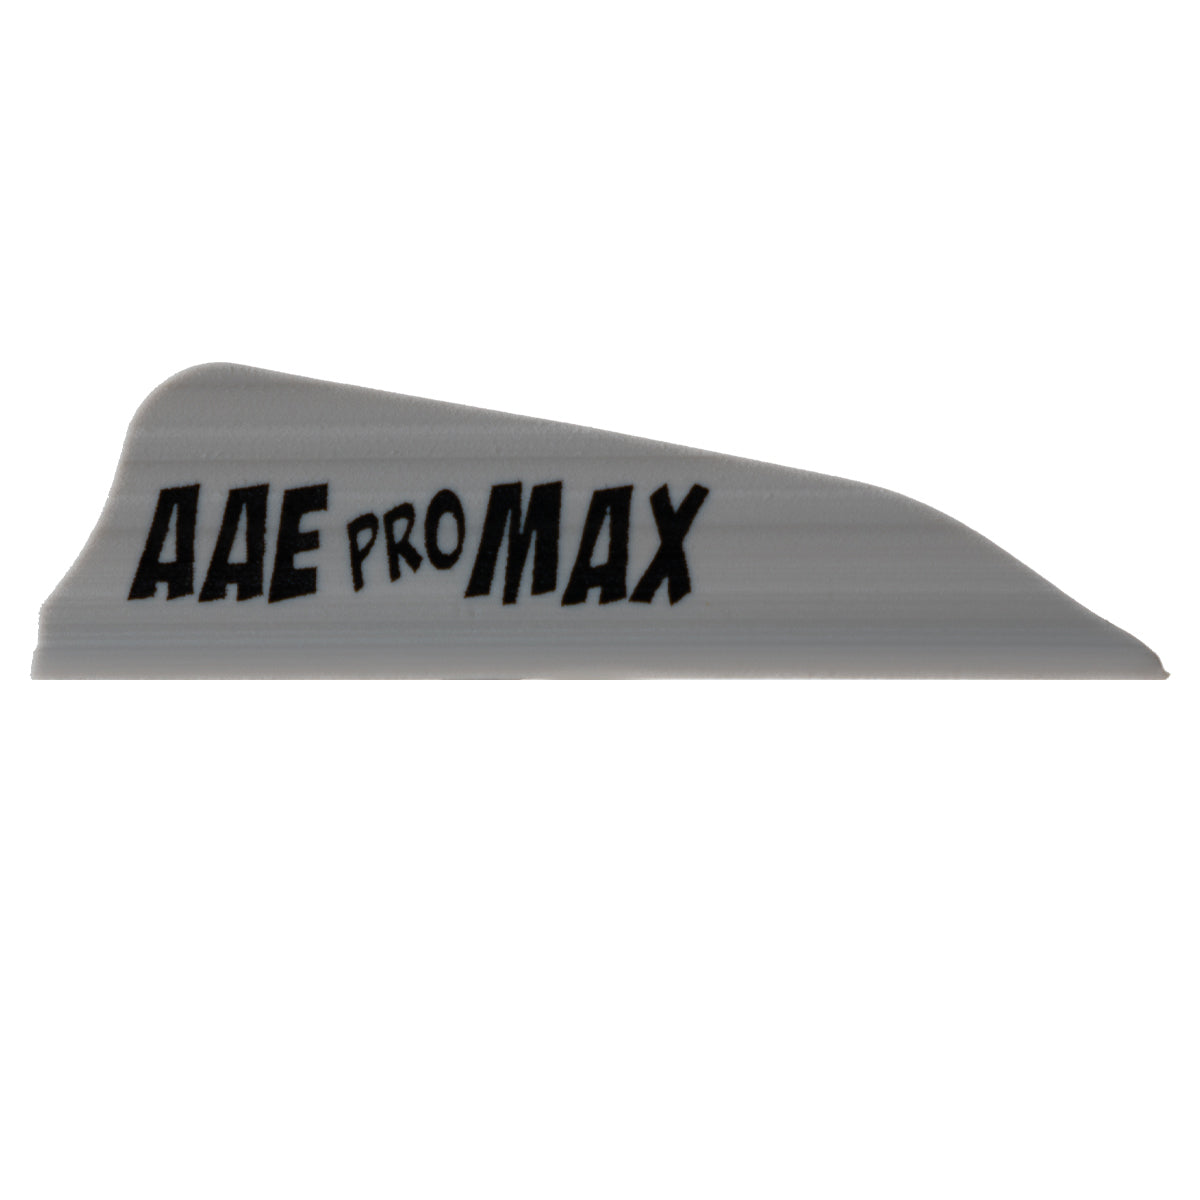 AAE Pro Max Arrow Vanes - 40 pack in Gray by GOHUNT | AAE - GOHUNT Shop